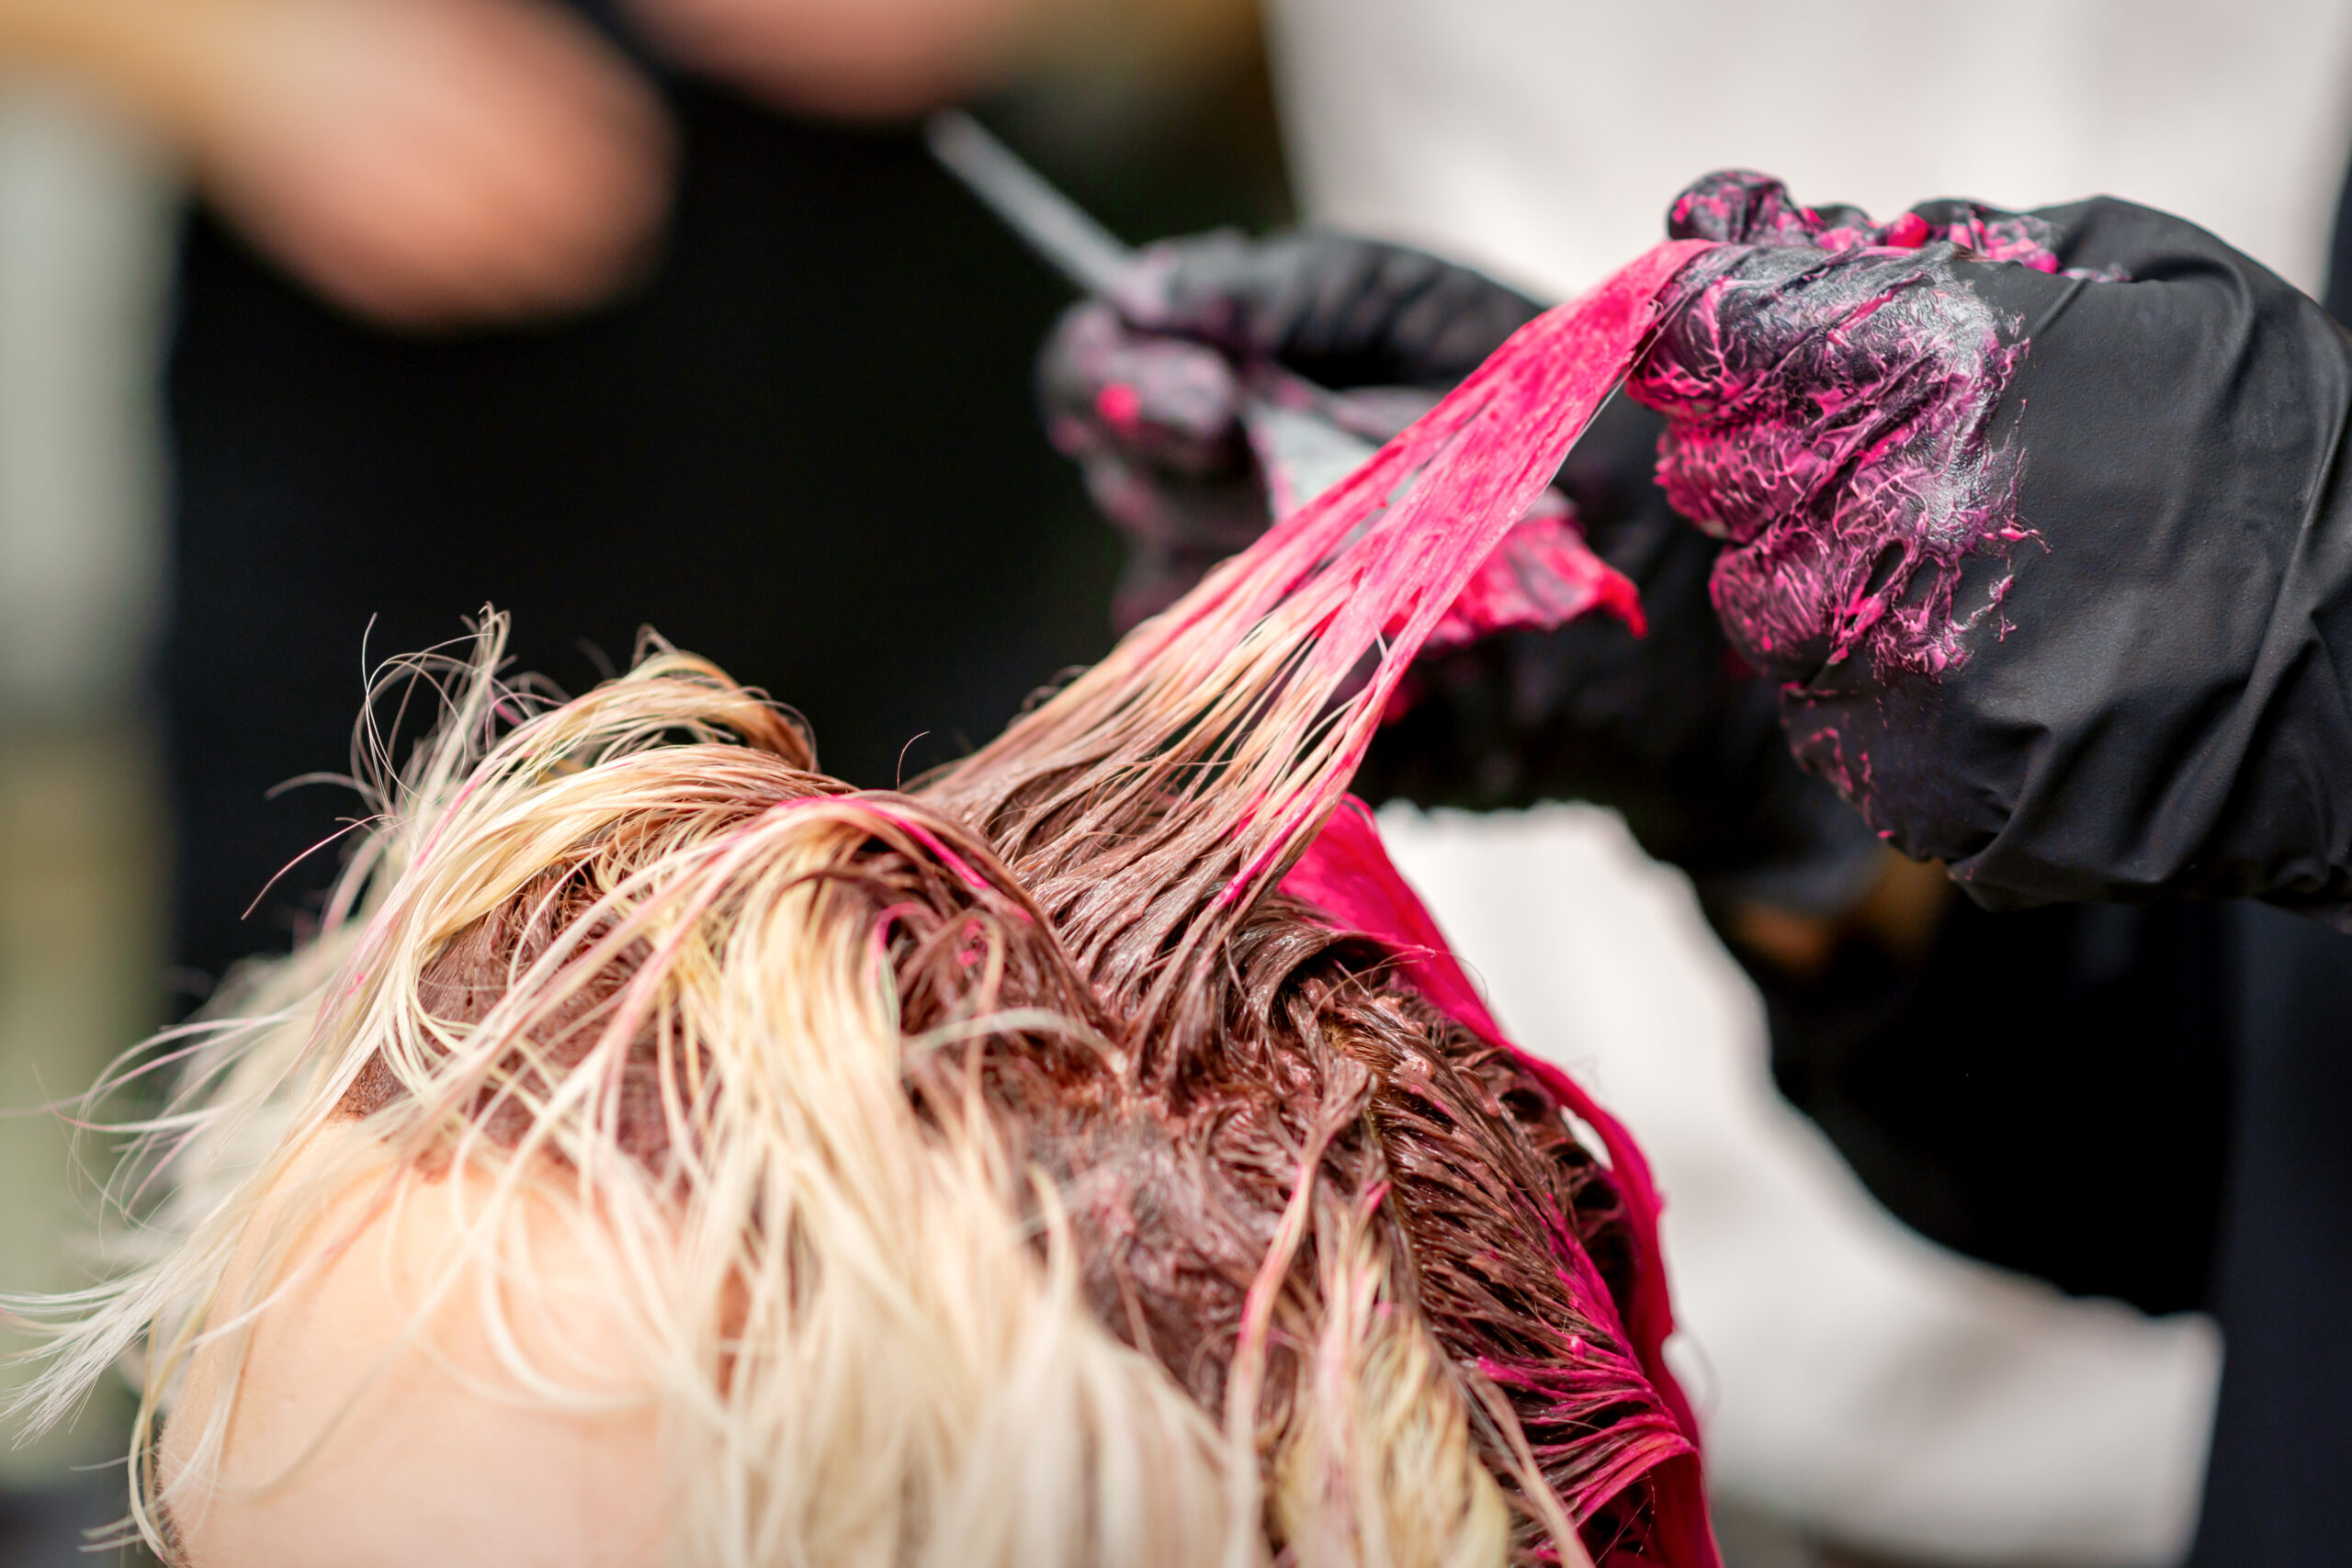 Przedstawiony na obrazku moment ukazuje kobietę siedzącą u fryzjera, podczas gdy stylistka precyzyjnie farbuje jej włosy od spodu. Ta odważna technika koloryzacji dodaje głębi i wyrazistości fryzurze, nadając kobiecie nowy, unikalny wygląd.